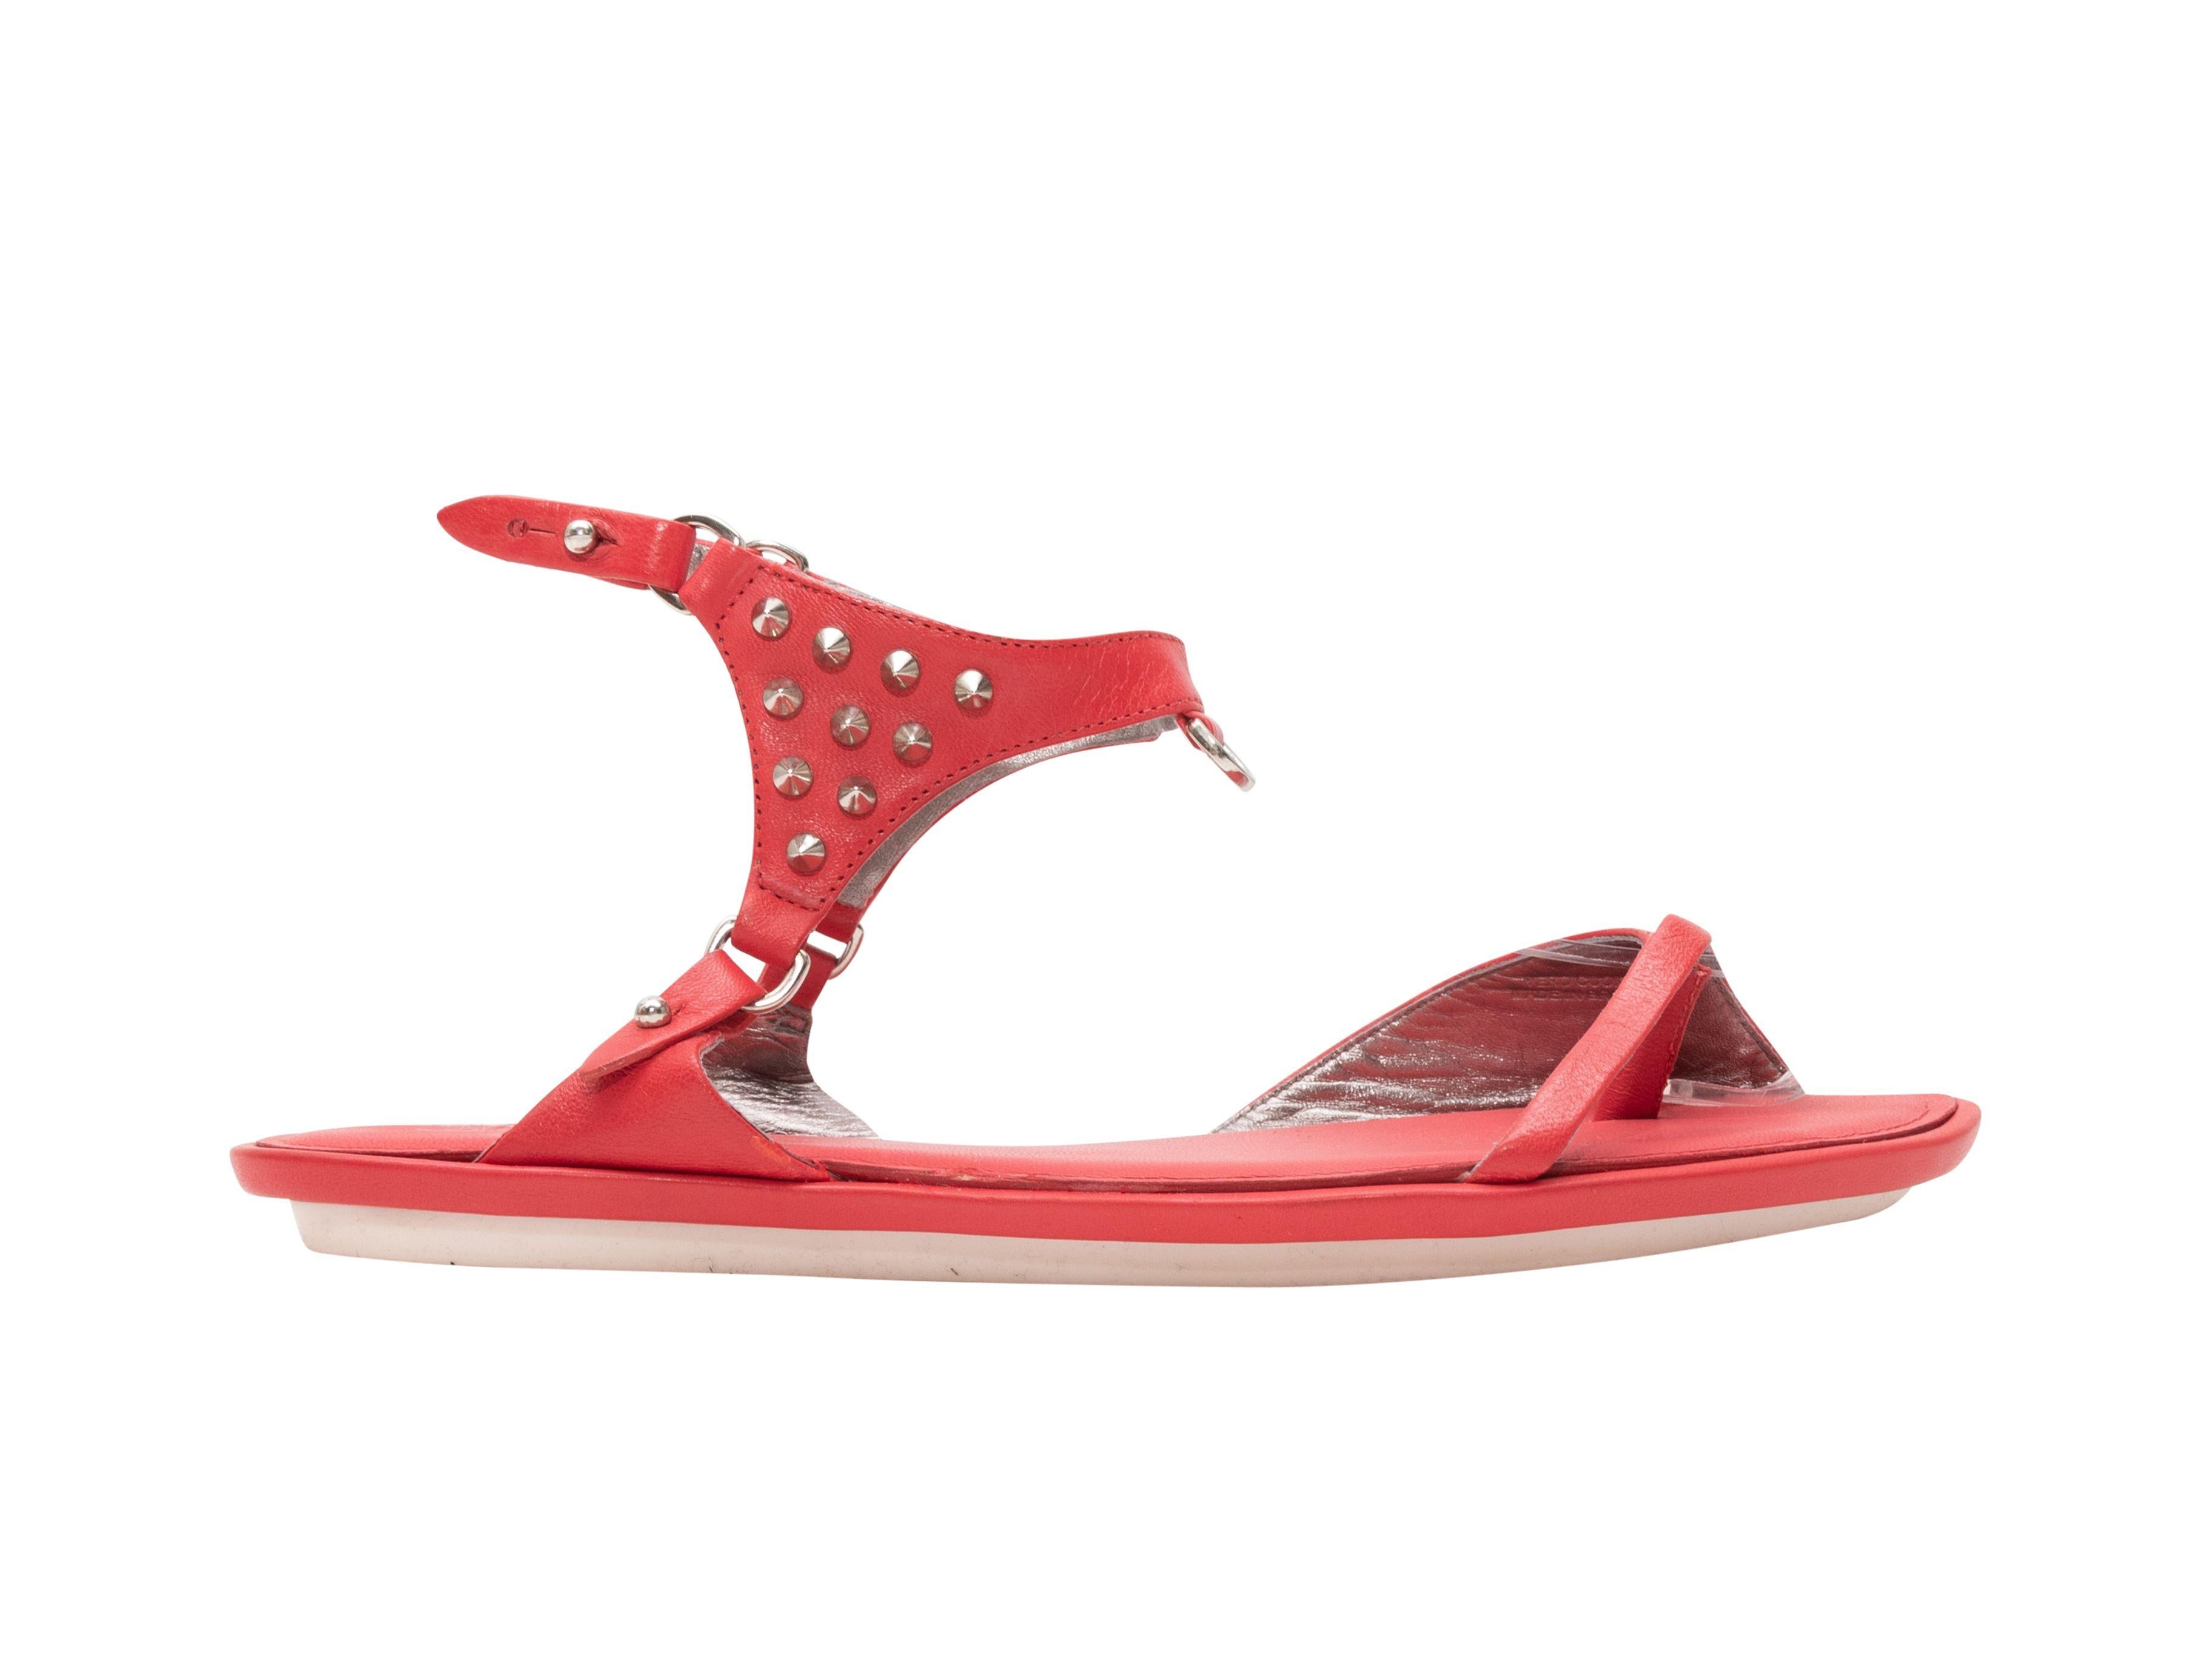 McQ Alexander McQueen Red Studded Sandals 2